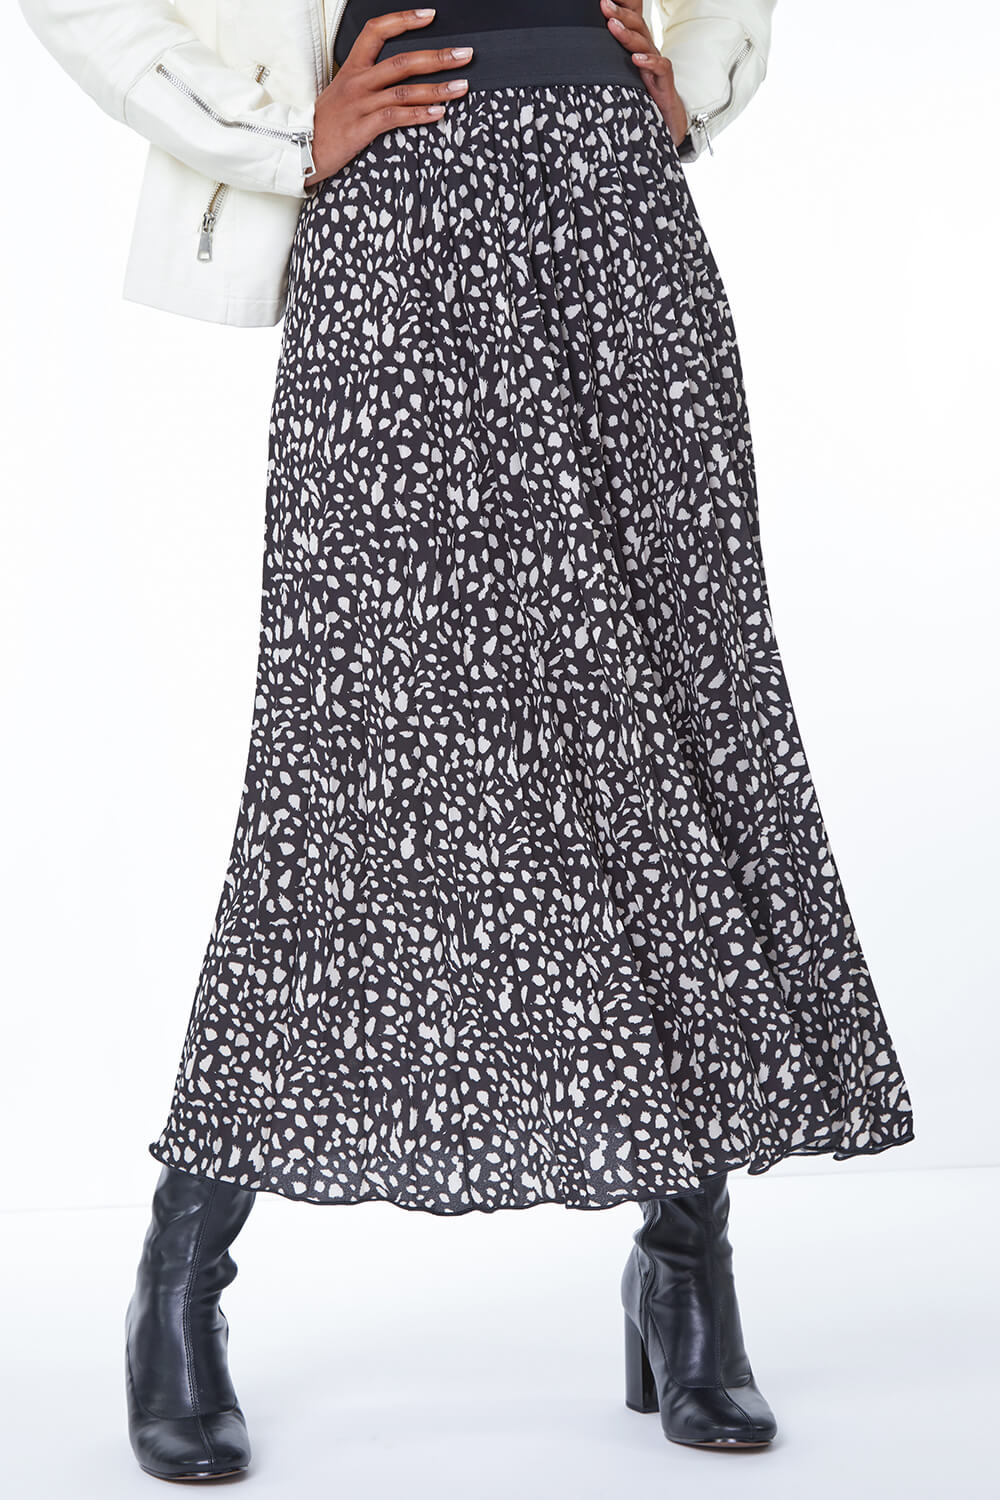 Petite Pleated Polka Dot Skirt in Black | Roman UK